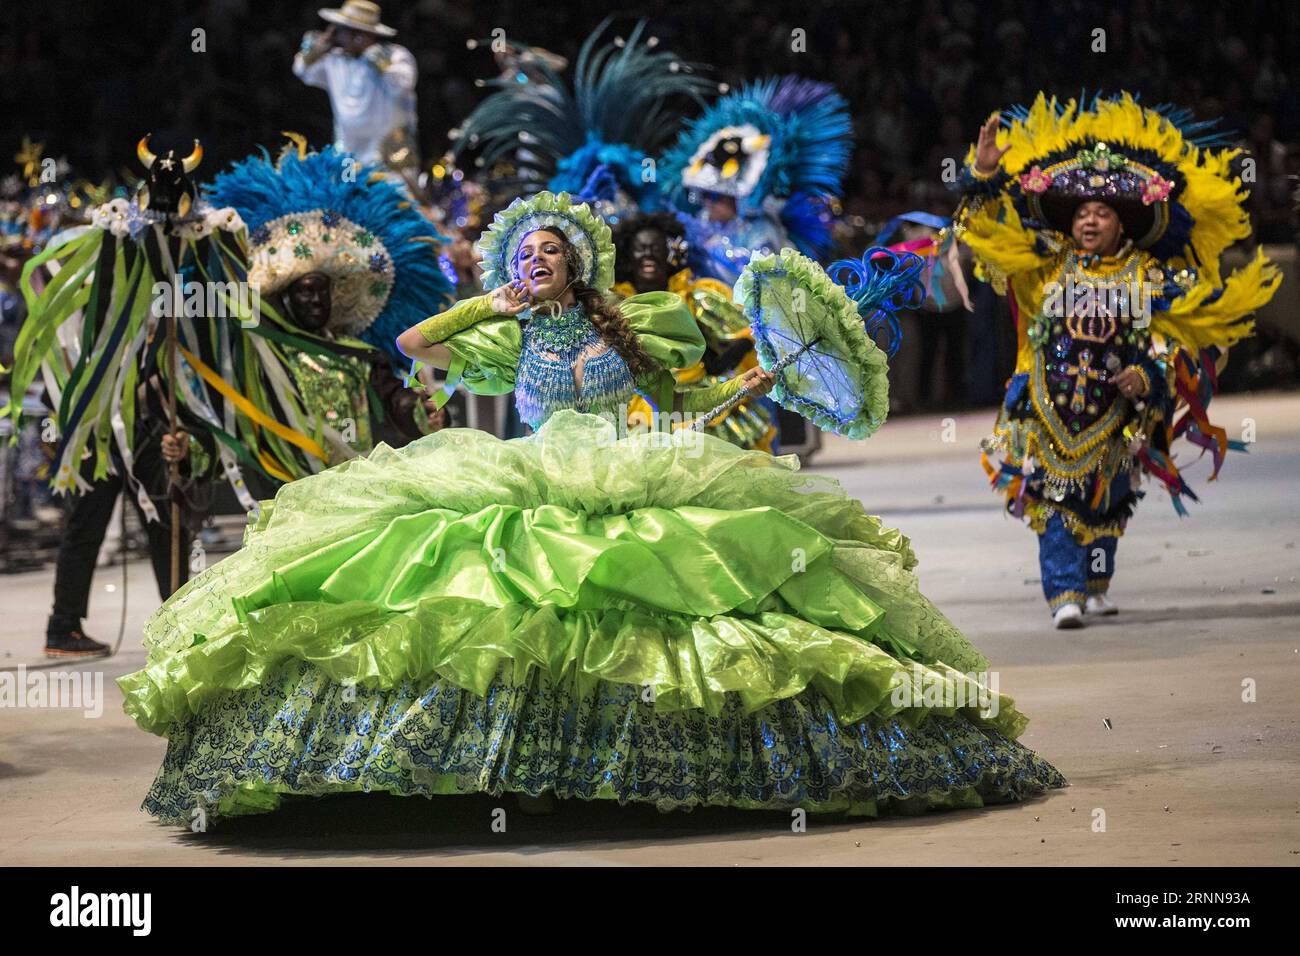 (170702) -- PARINTINS, 2 juillet 2017 -- un acteur de l'équipe Caprichoso se produit lors du Festival folklorique Parintins à Parintins, dans l'État d'Amazonas, Brésil, le 1 juillet 2017. Parintins folklore Festival, une célébration annuelle populaire tenue dans la ville brésilienne de Parintins, Amazonas, a débuté vendredi soir. (Zxj) BRÉSIL-PARINTINS-FESTIVAL LixMing PUBLICATIONxNOTxINxCHN Parintins juillet 2 2017 à l'acteur de l'équipe Caprichoso se produit pendant le Parintins folklore Festival à Parintins l'État amazonien Brésil LE 1 2017 juillet Parintins folklore Festival un héros annuel populaire de célébration dans le soutien-gorge Banque D'Images